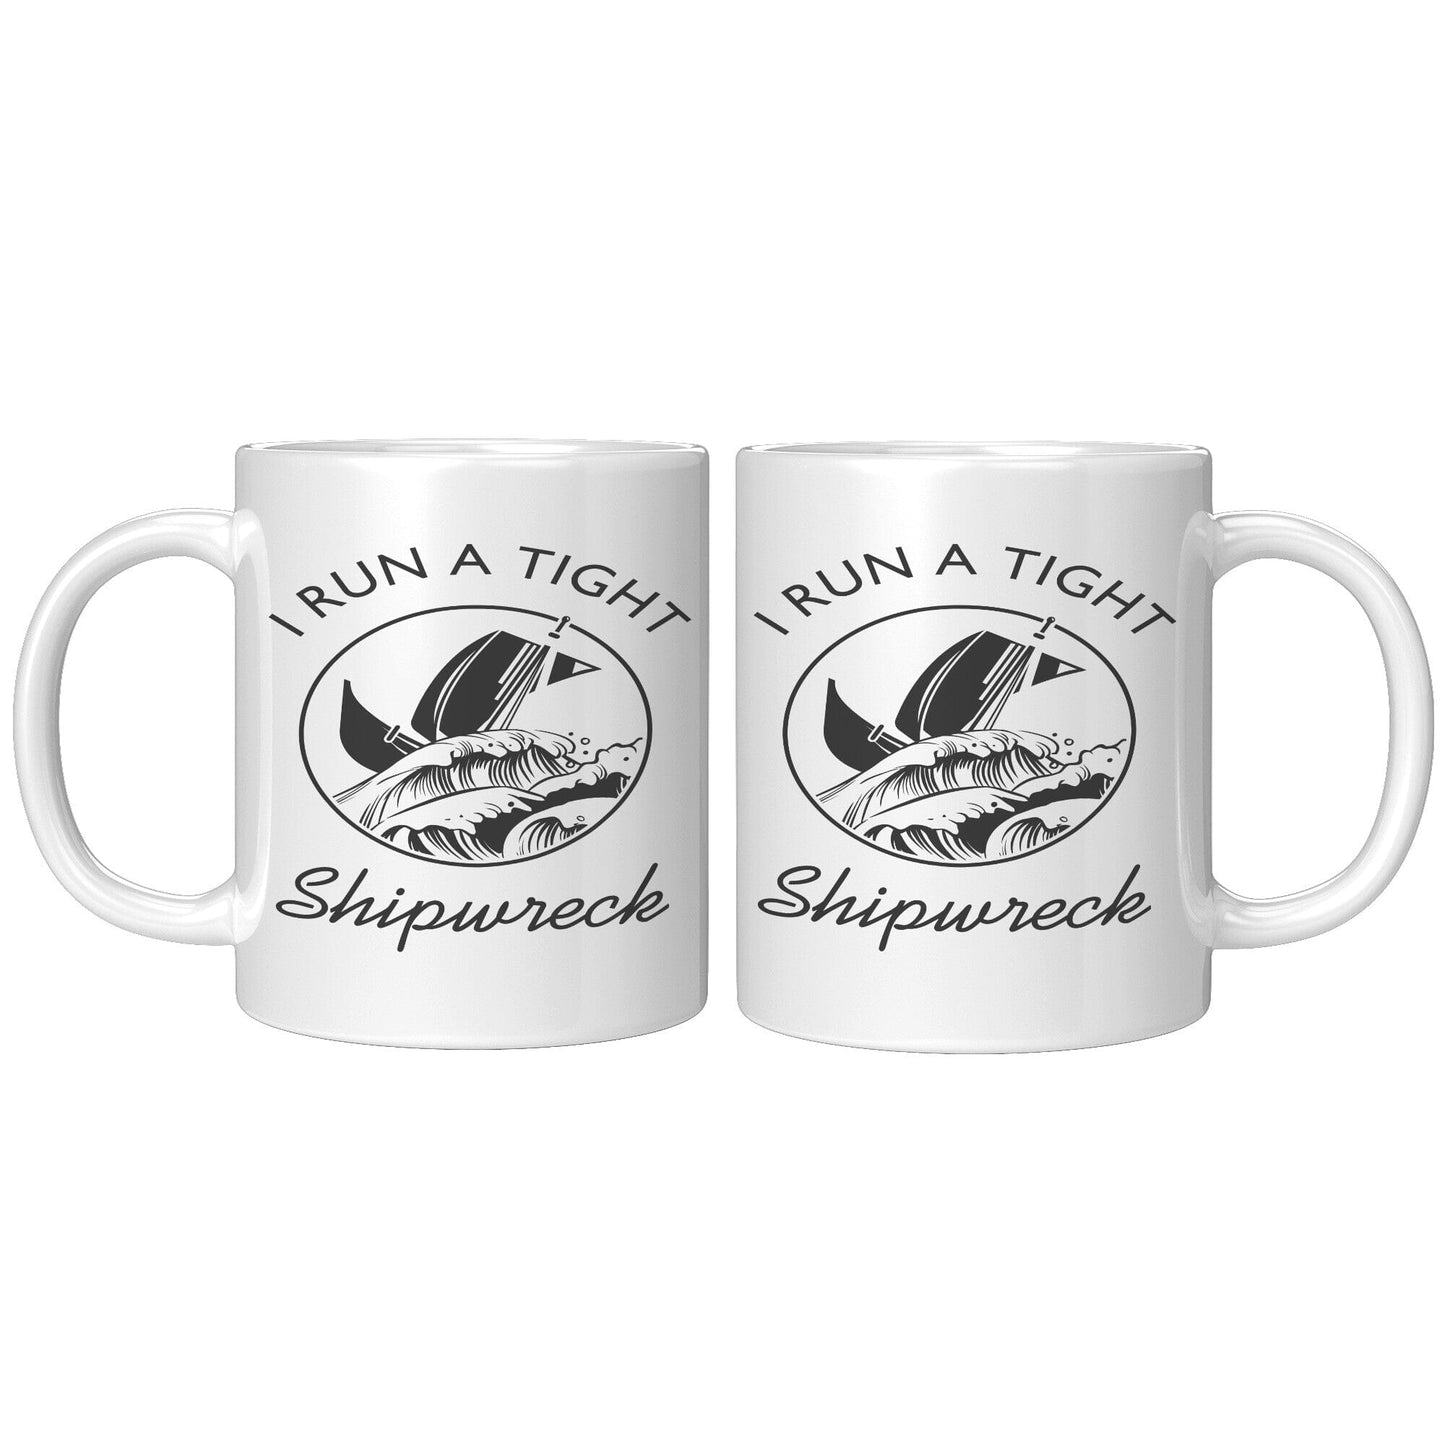 Tight Shipwreck - Coffee Mug